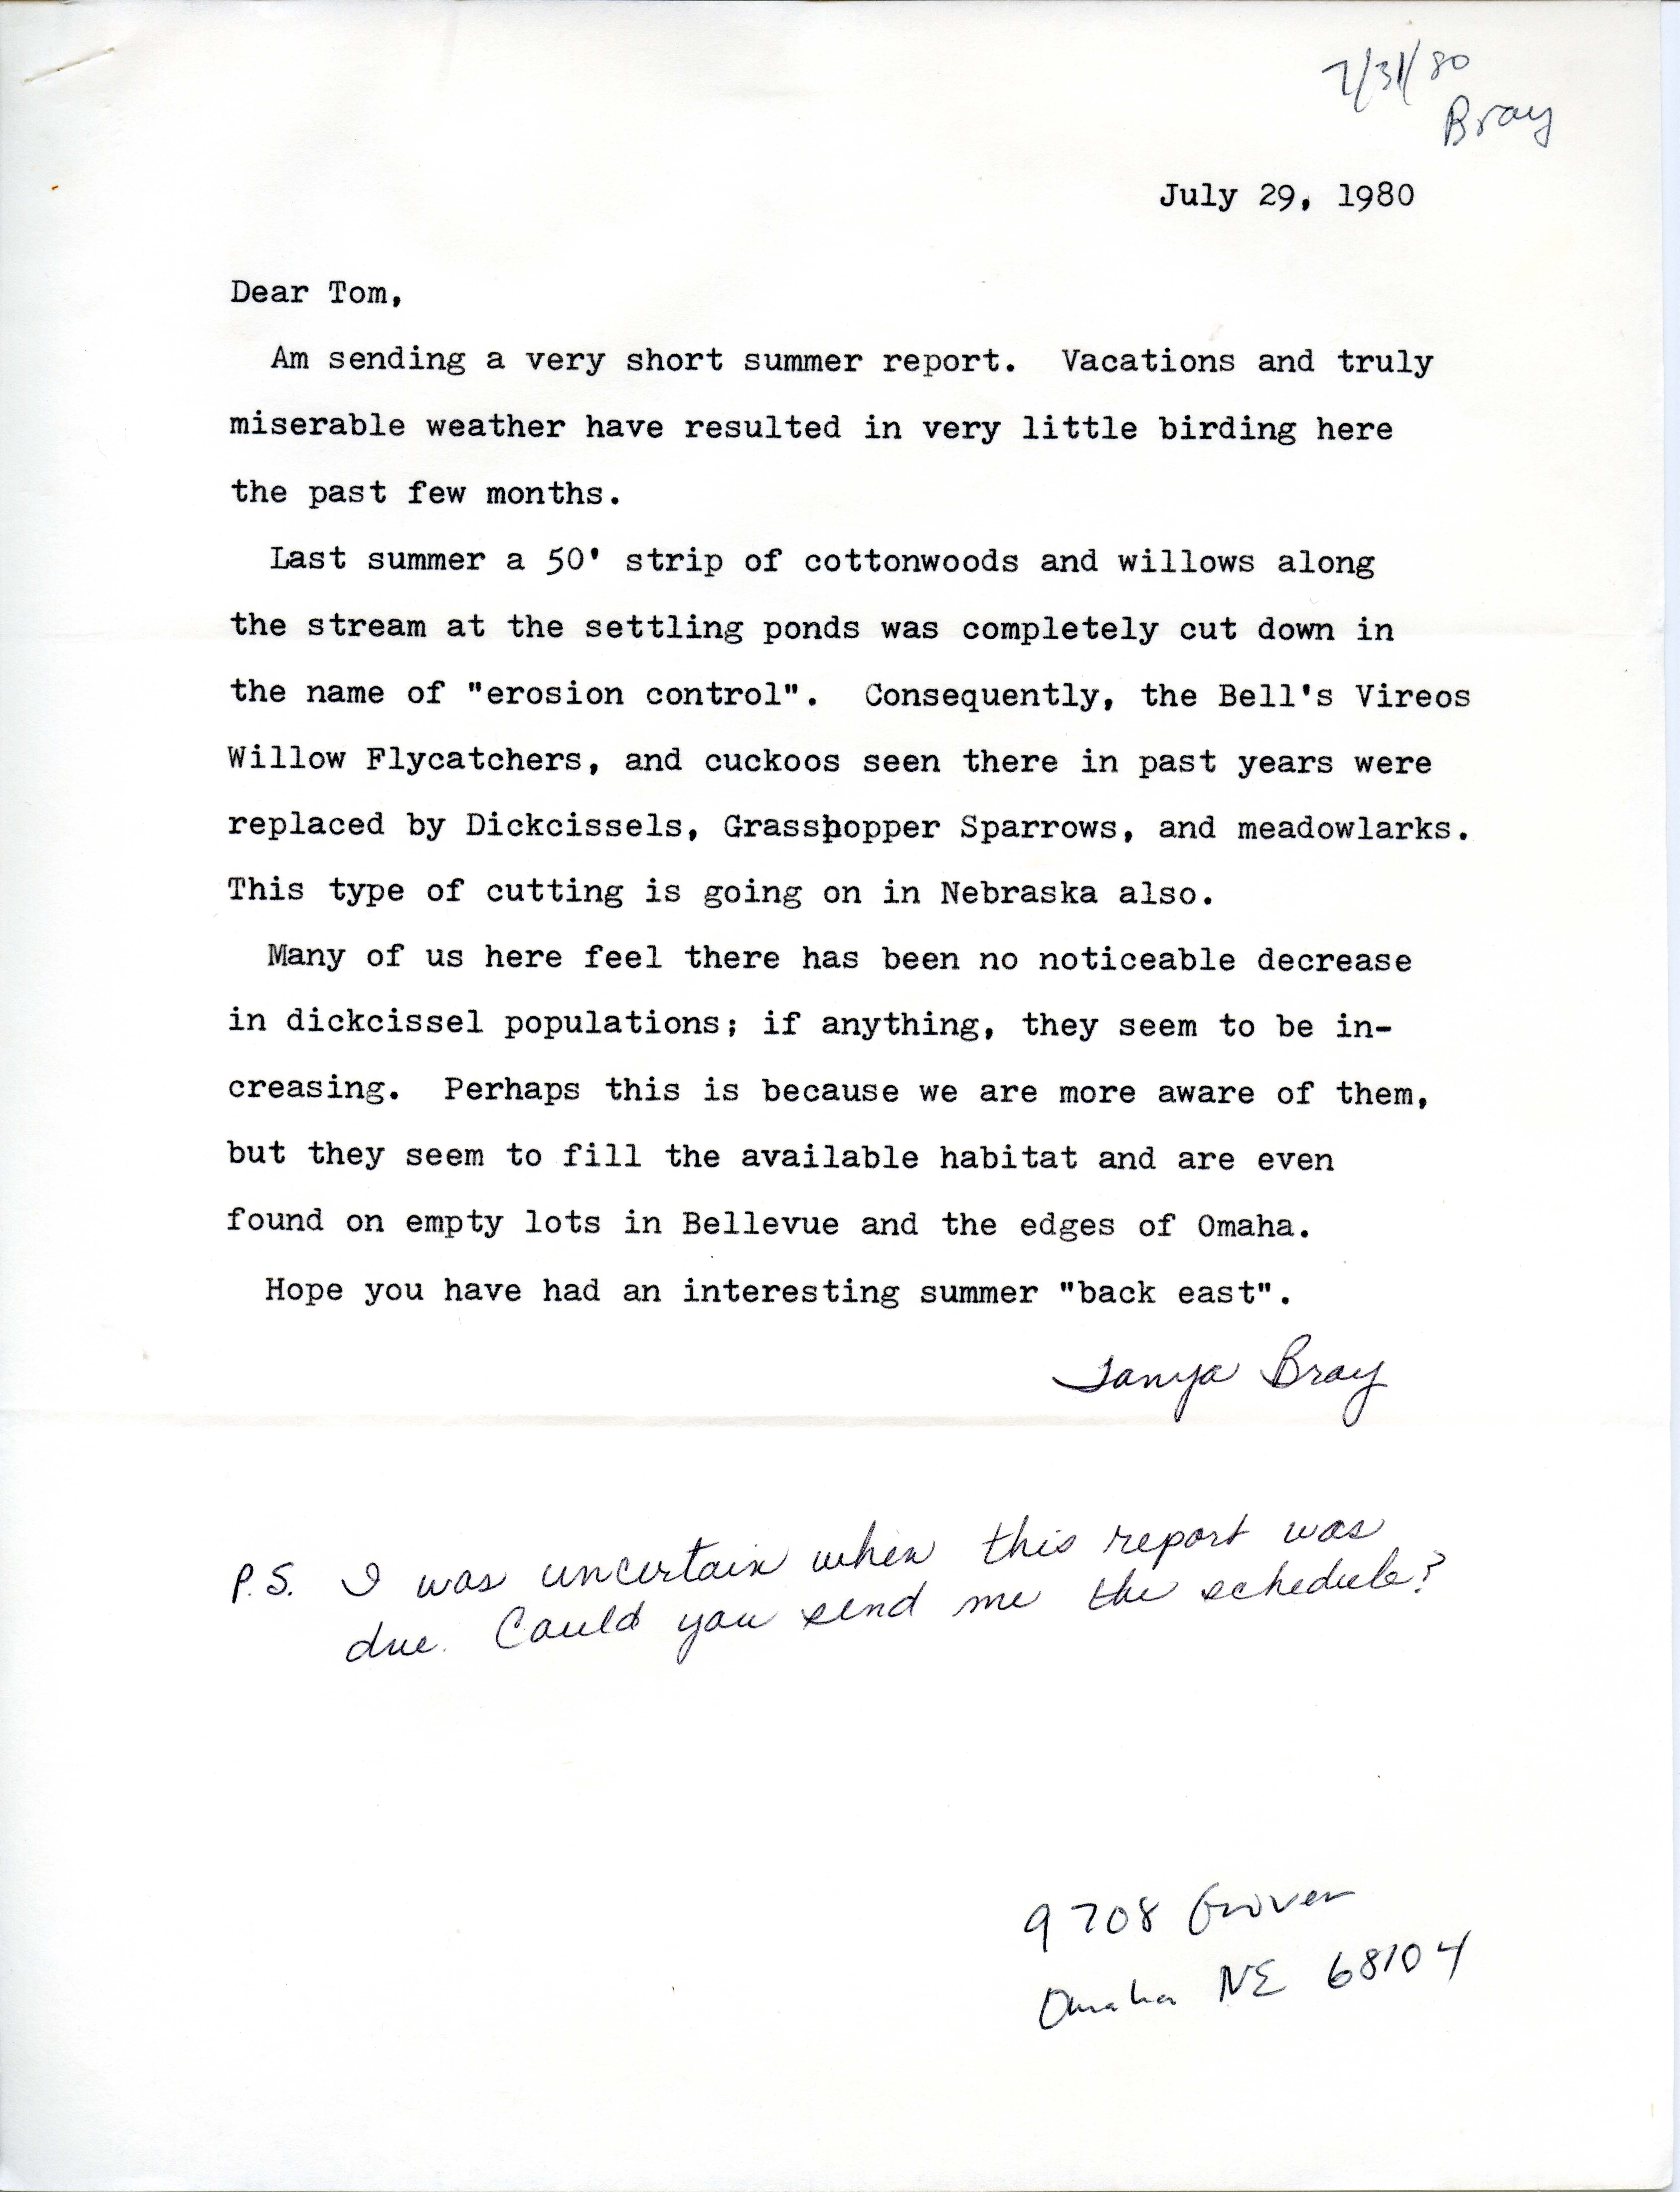 Tanya Bray letter to Thomas H. Kent regarding bird sightings, July 29, 1980